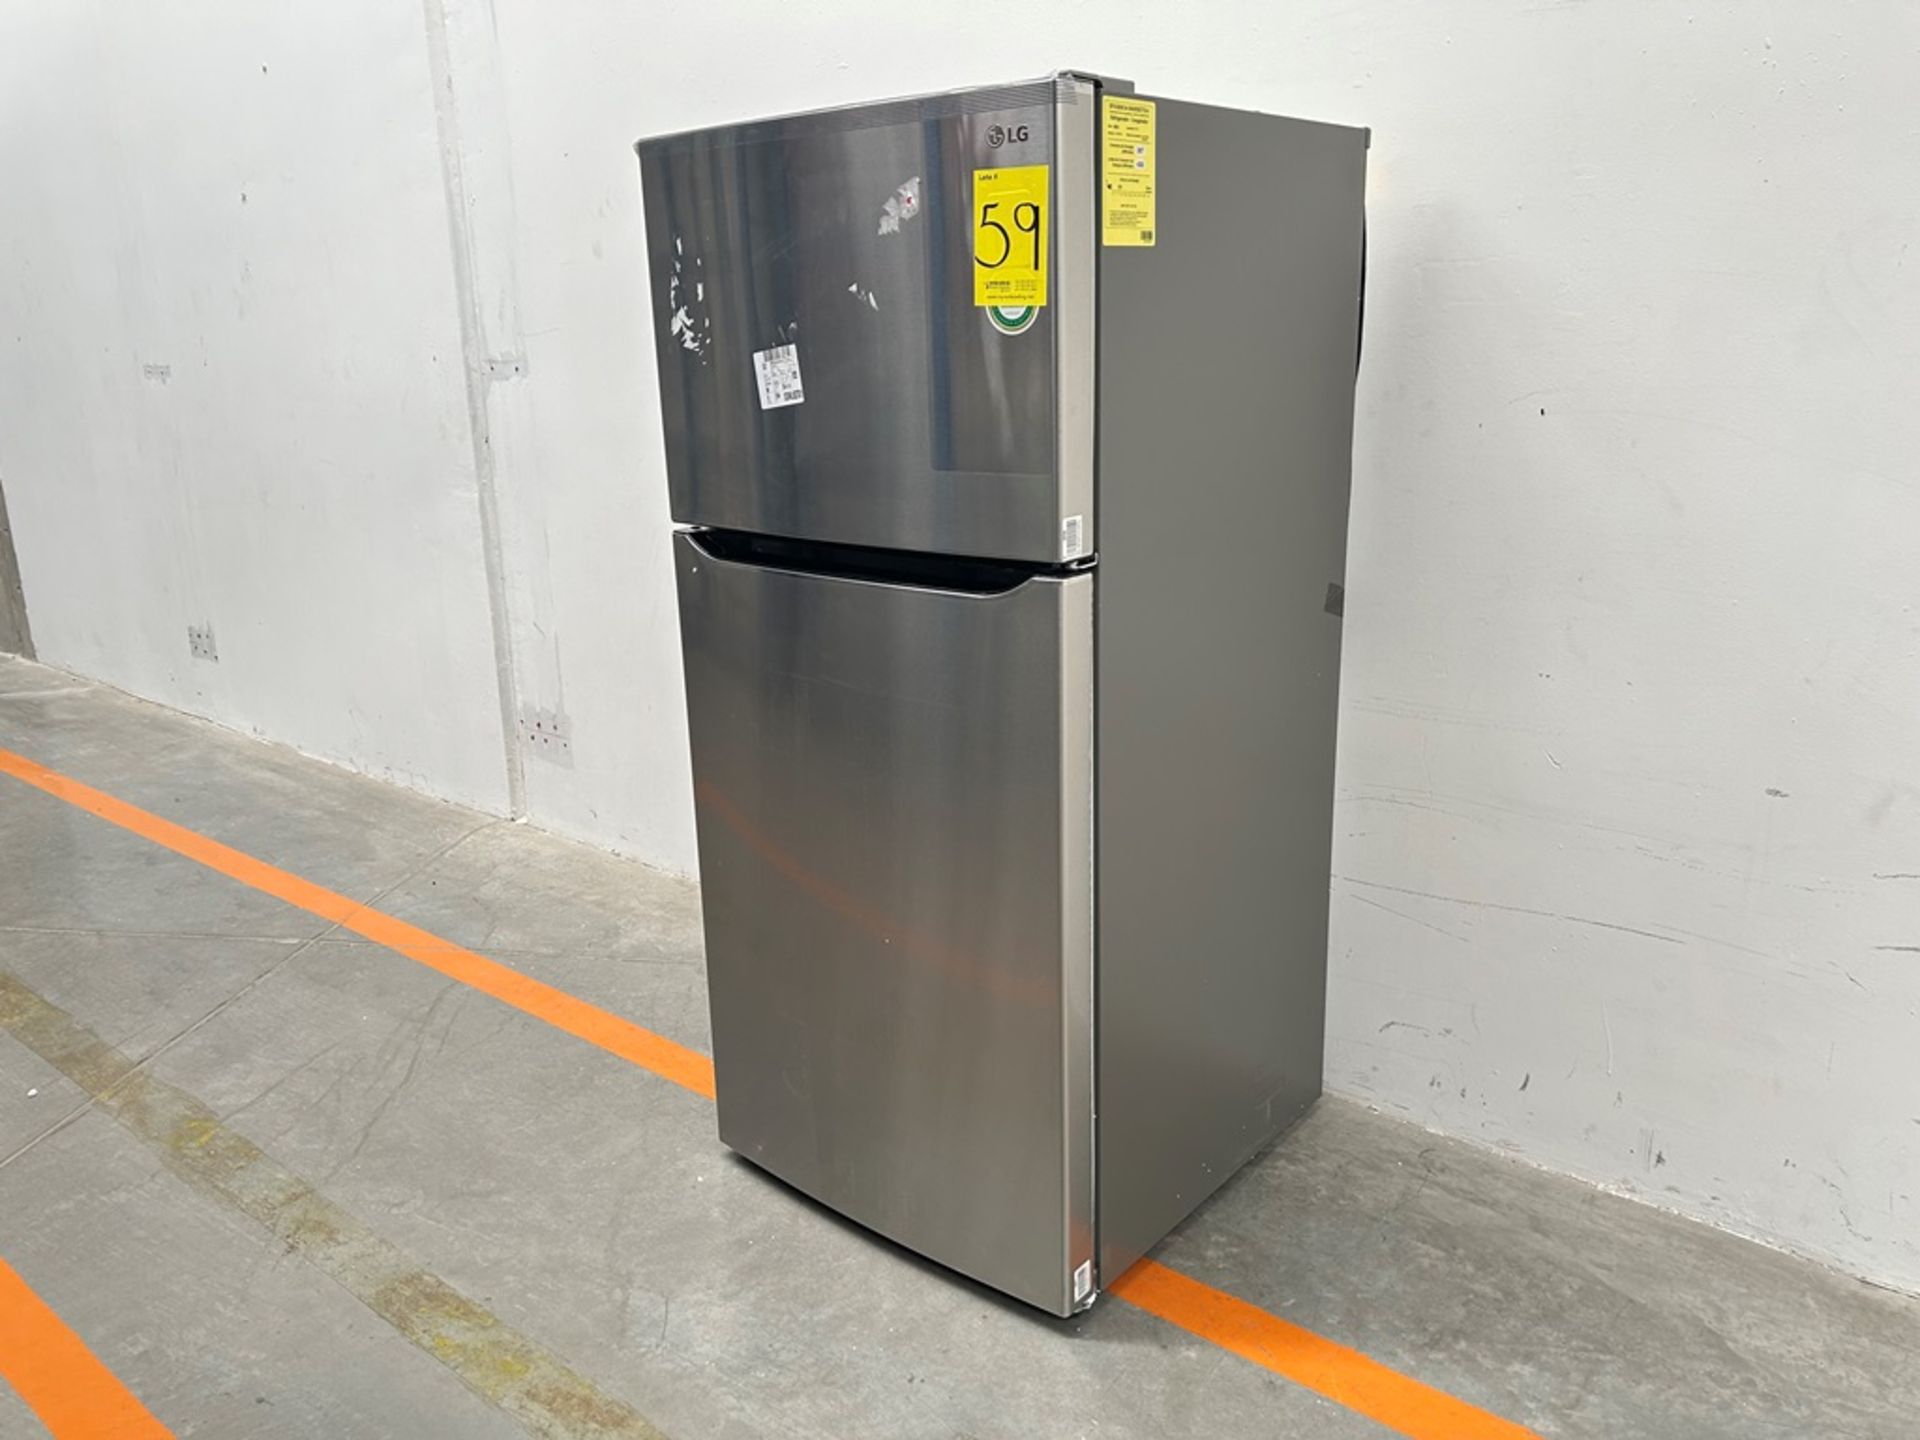 (NUEVO) Refrigerador Marca LG, Modelo LT57BPSX, Serie 1U863, Color GRIS - Image 2 of 11